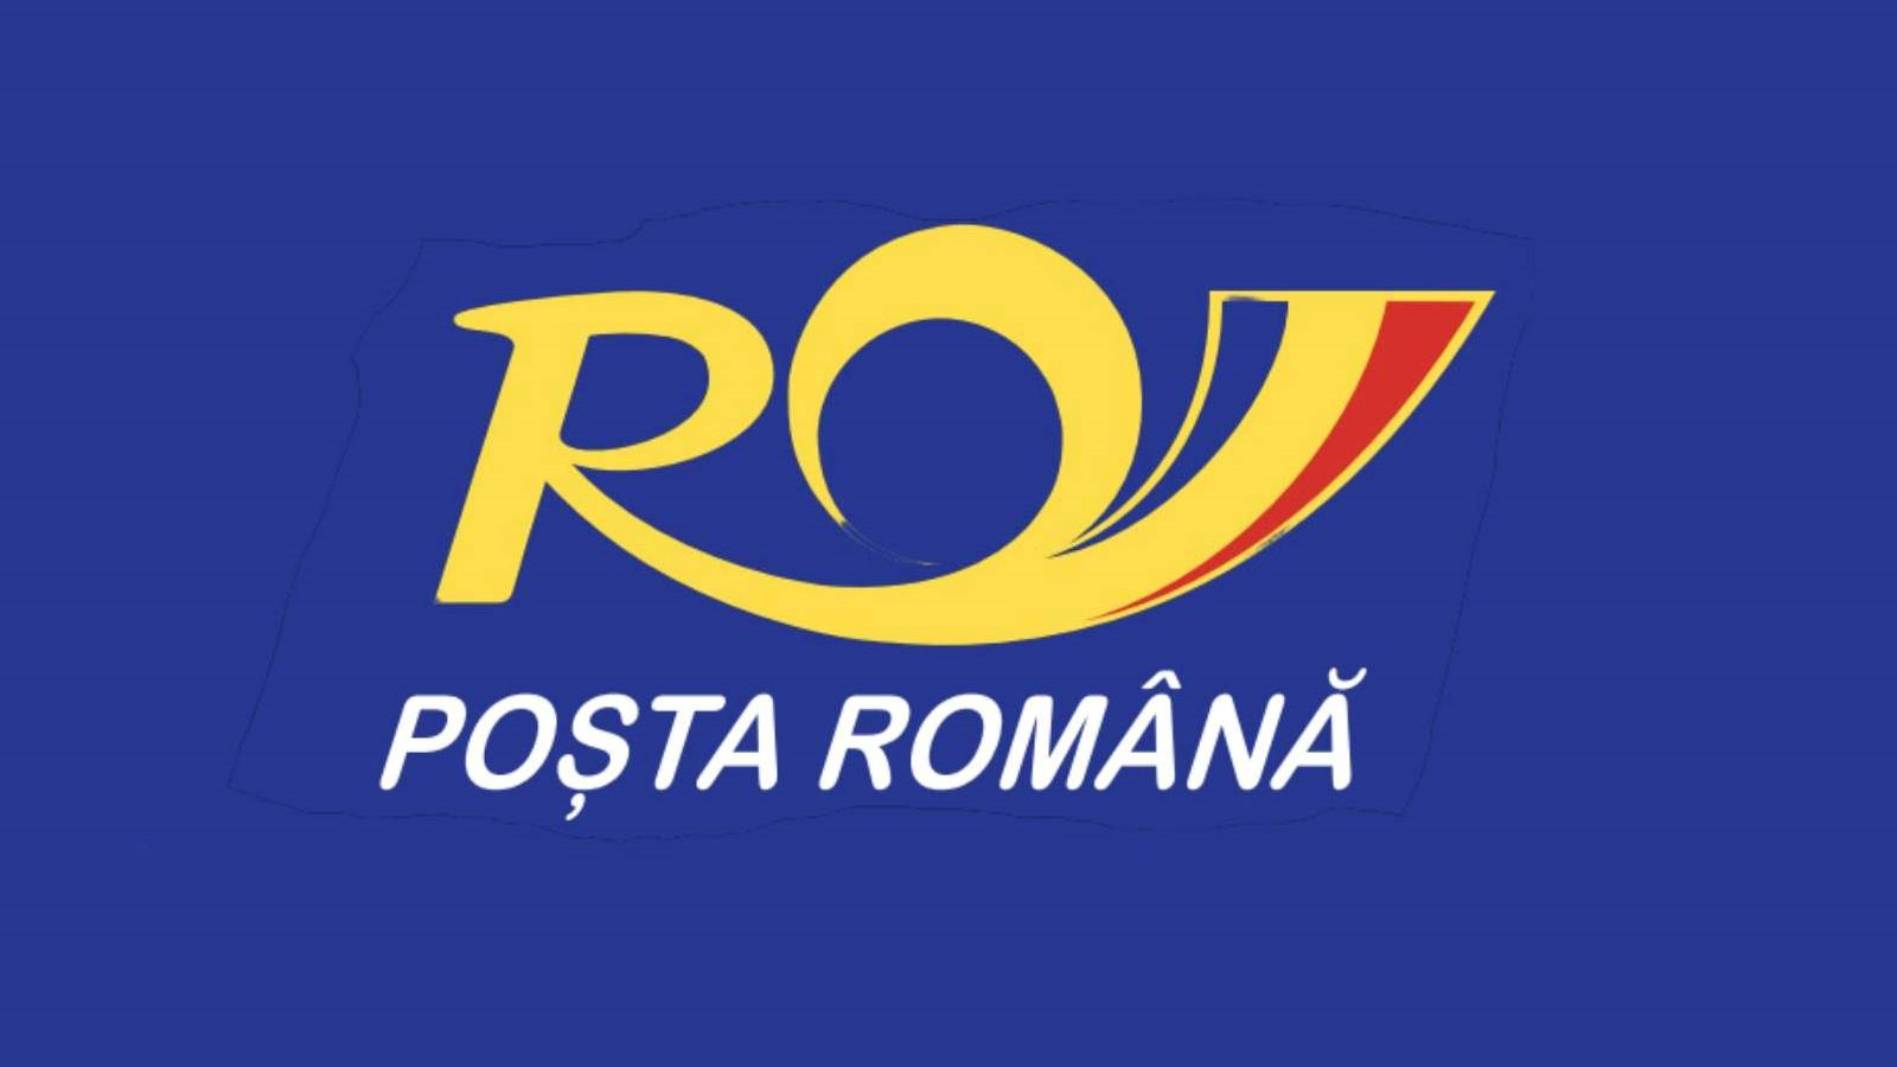 ALARMsignaal afgevuurd door het Roemeense postkantoor en onder de aandacht van alle Roemenen gebracht